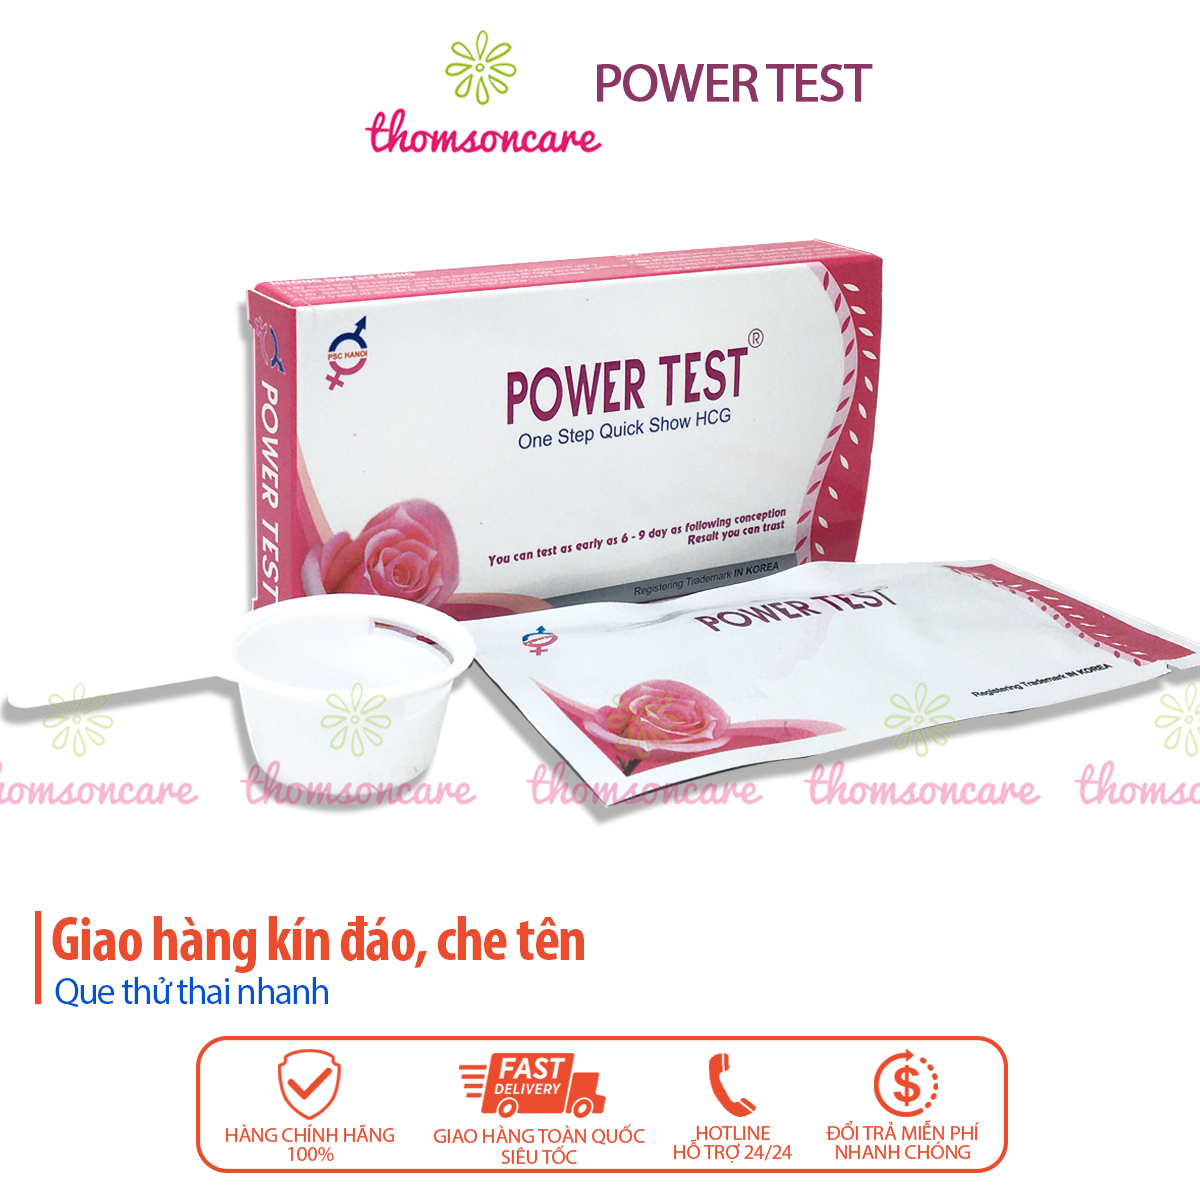 power test - test thử thai nhanh, chính xác - giao hàng kín đáo 2